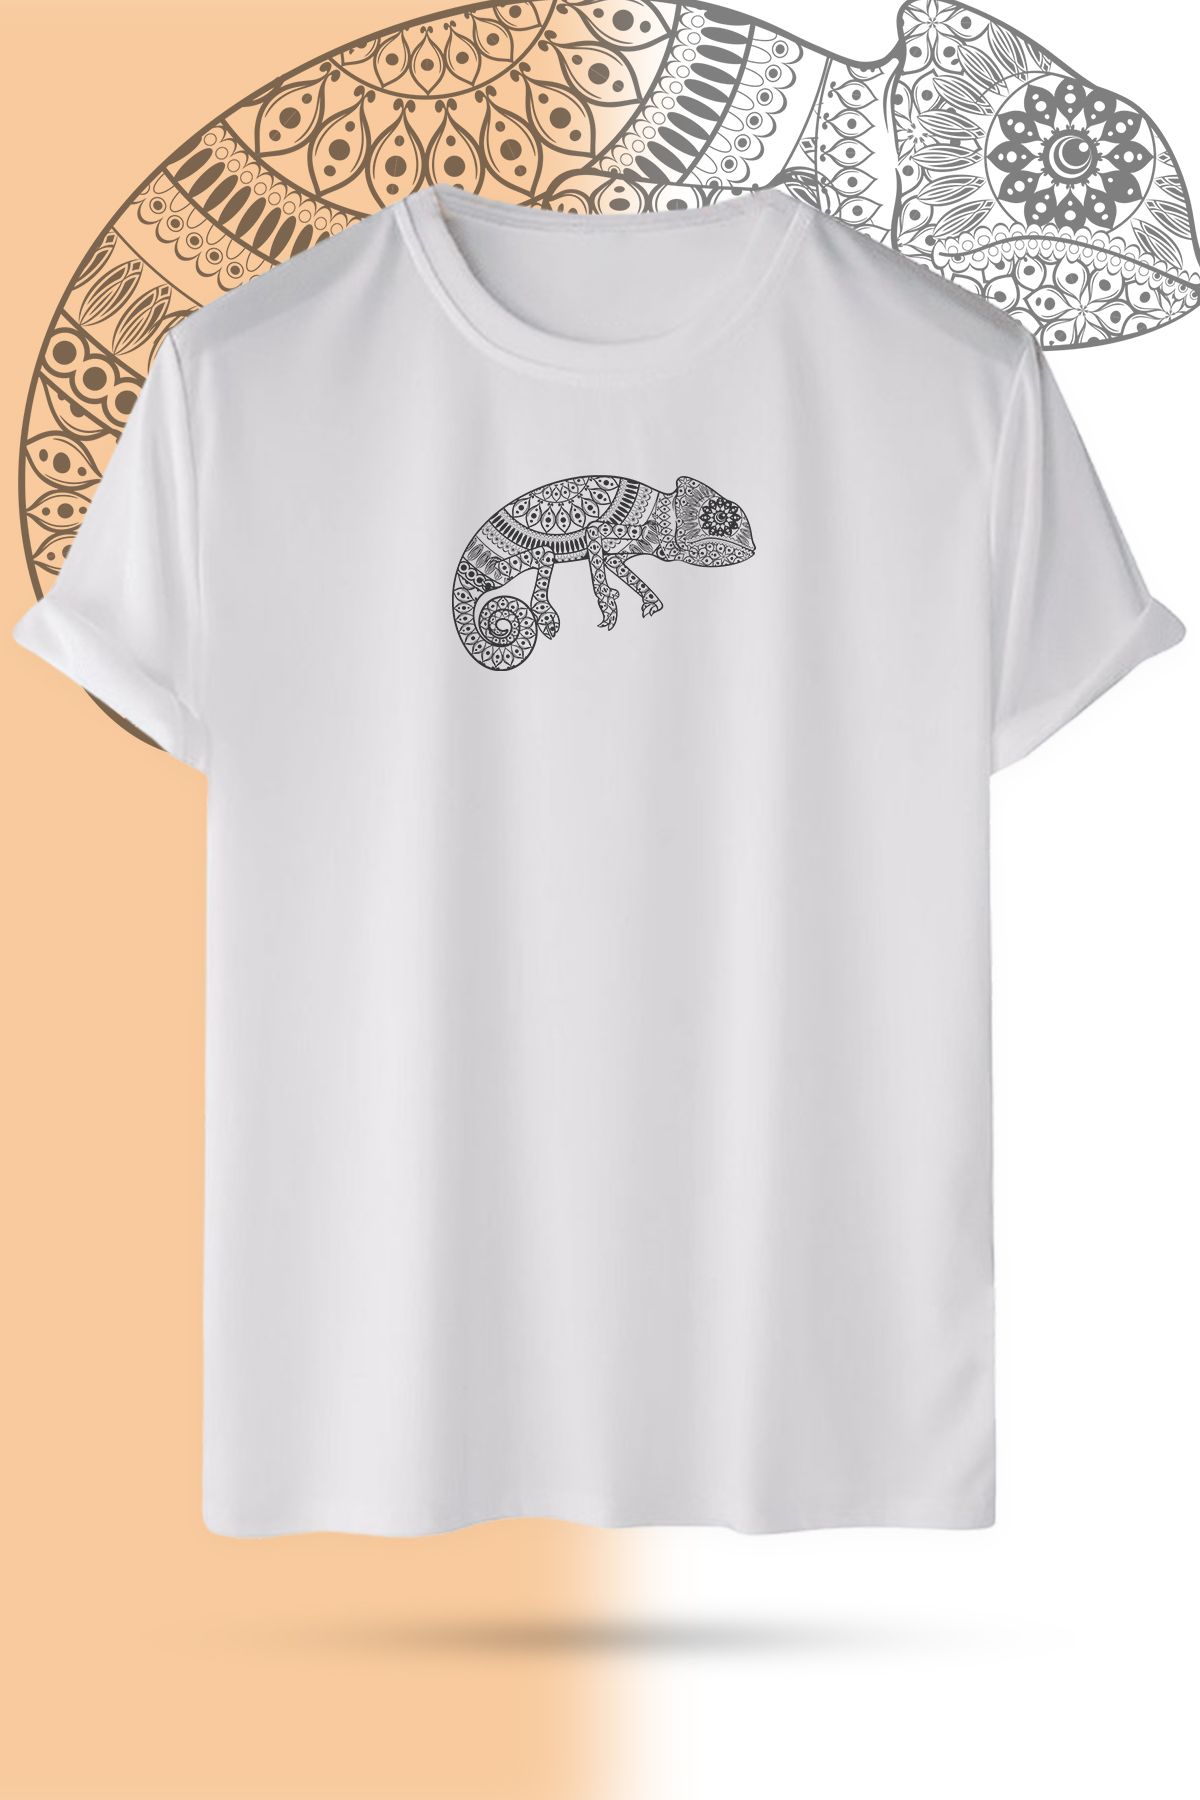 WebStyle Chameleon Pamuklu Bisiklet Yaka Baskılı Beyaz Kısa Kollu Unisex Tişört